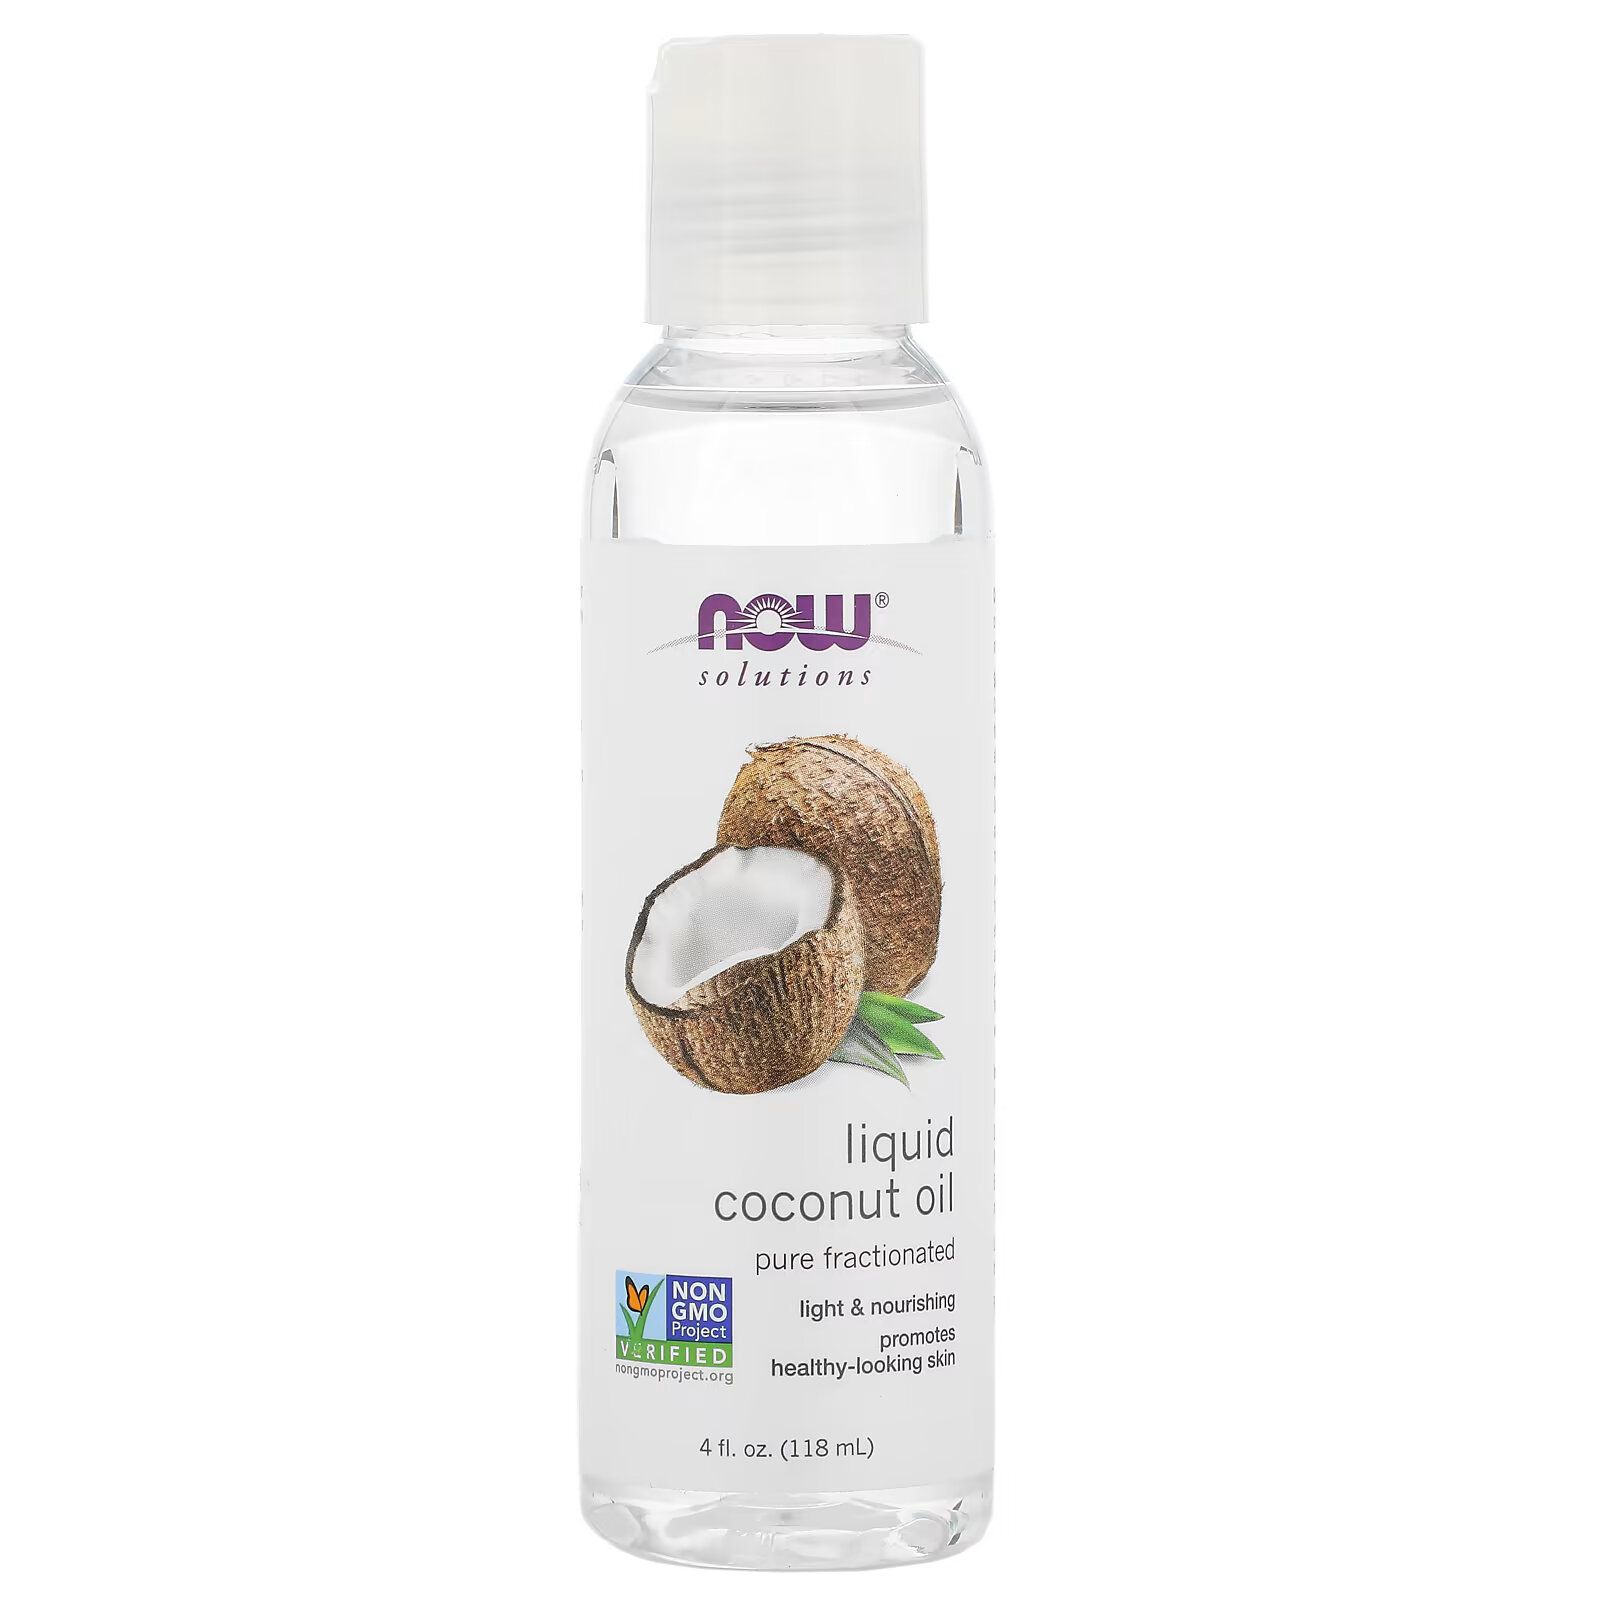 цена NOW Foods, Solutions, жидкое кокосовое масло, без примесей, фракционированное, 118 мл